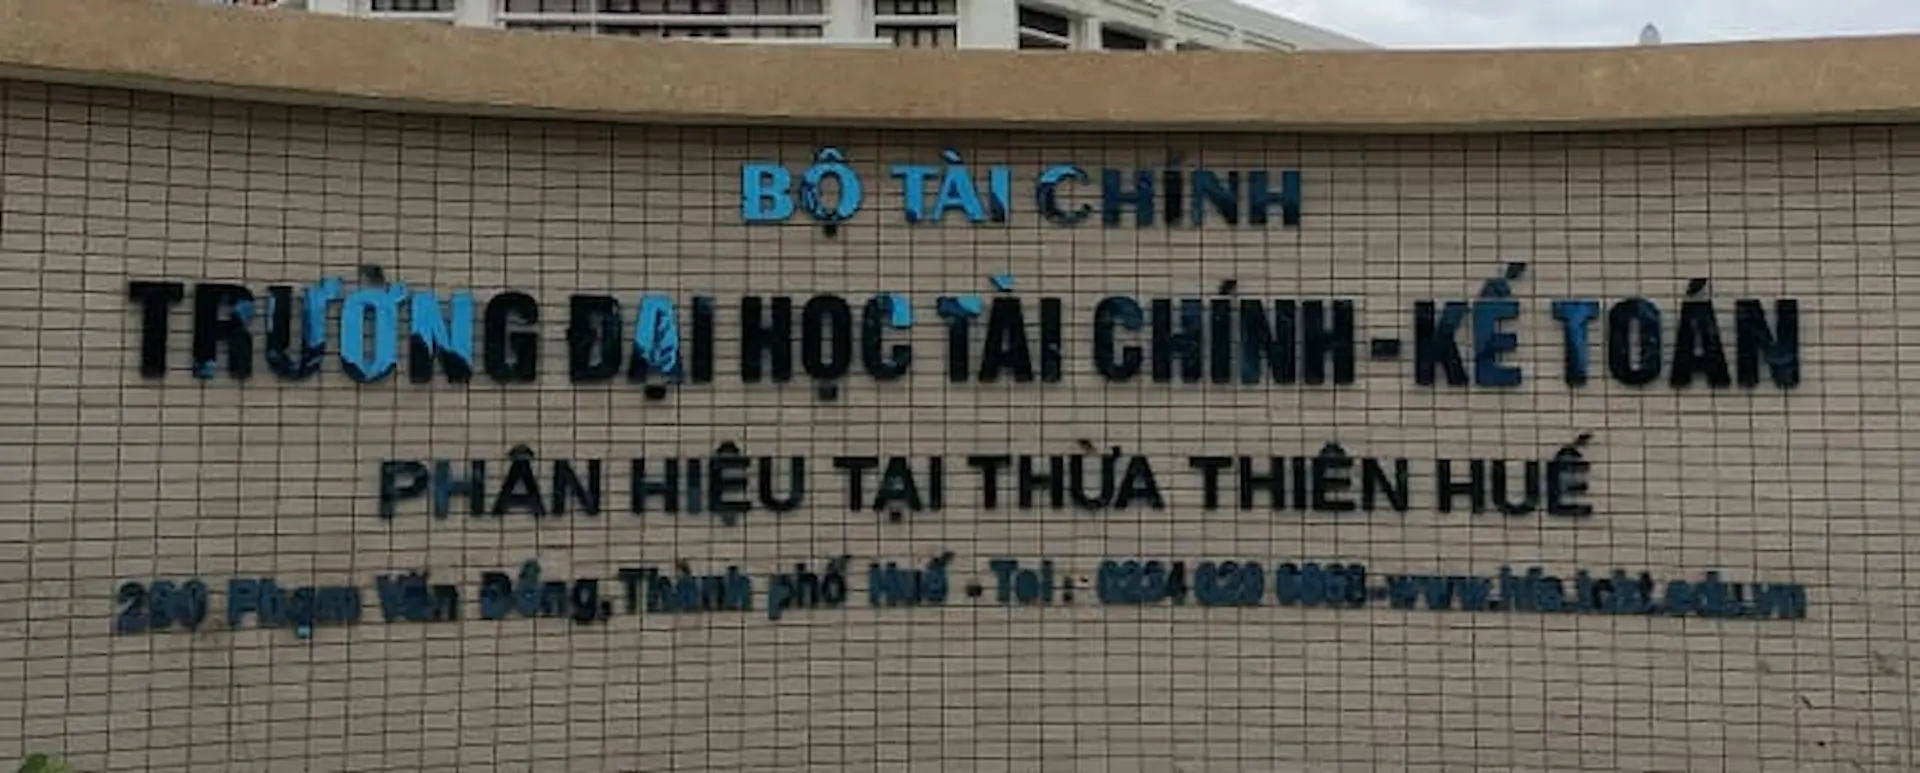 Phân hiệu Đại học Tài chính – Kế toán tại Thừa Thiên – Huế